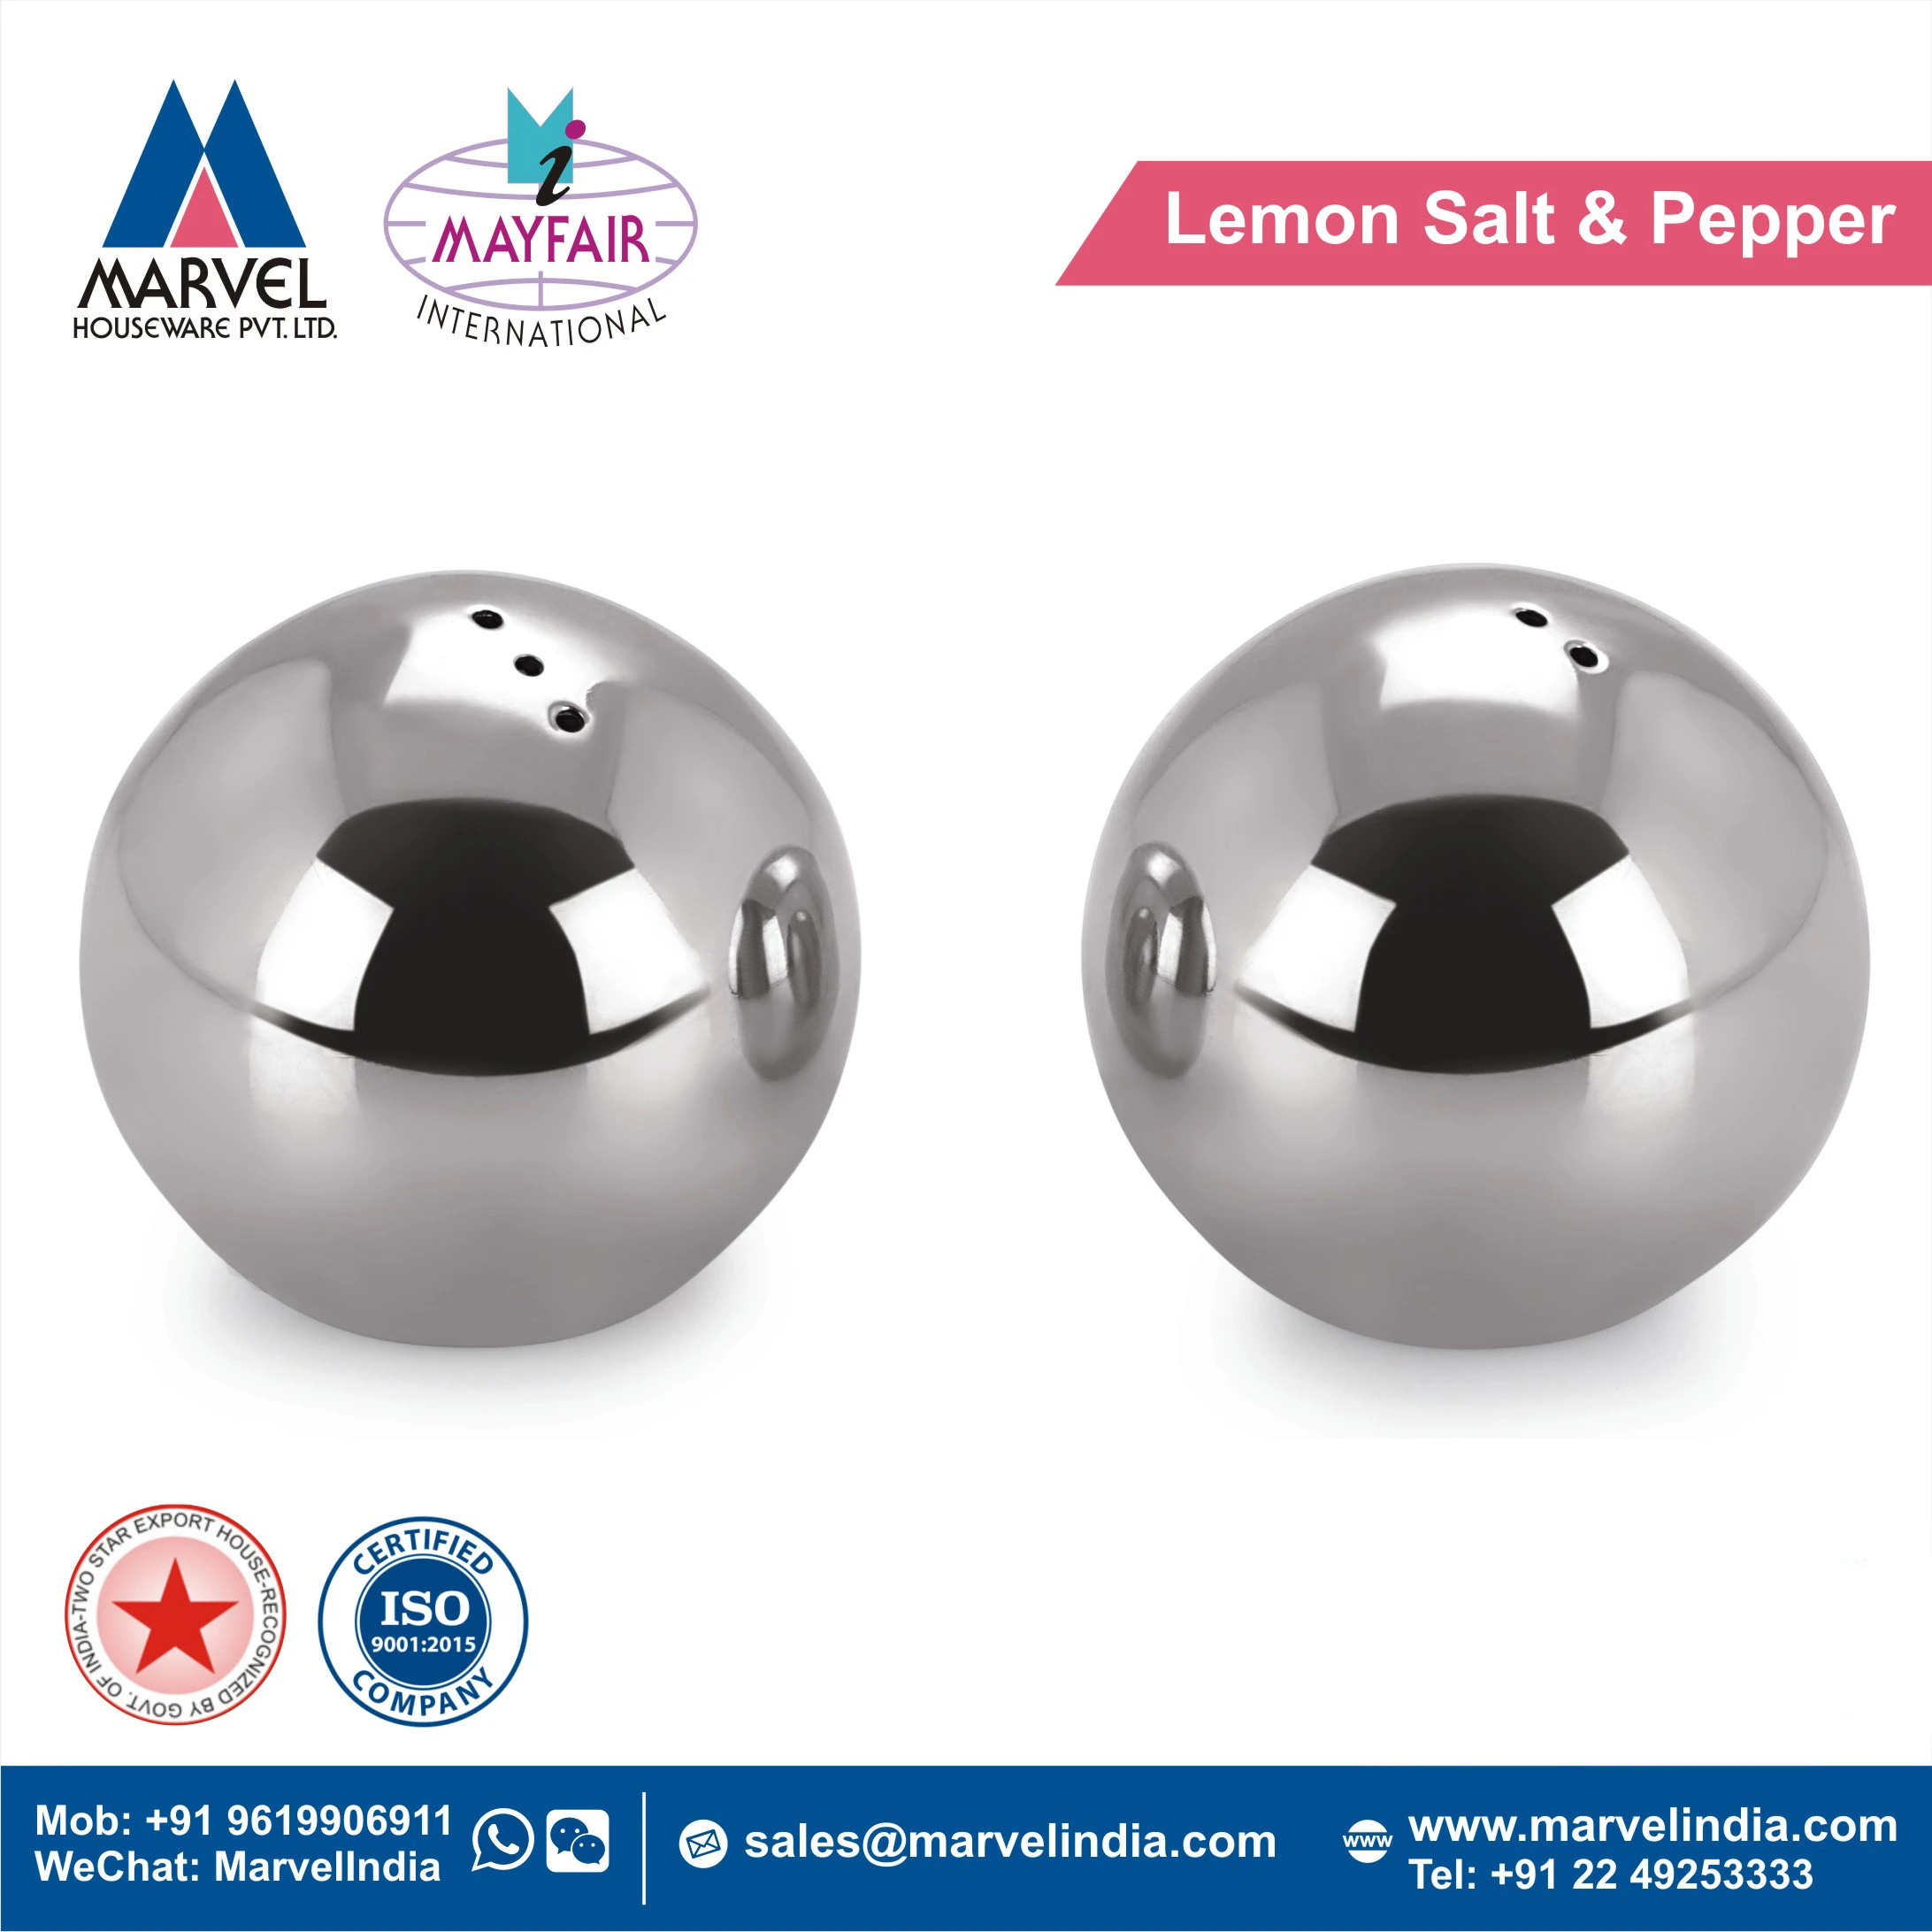 Lemon Salt & Pepper Shaker